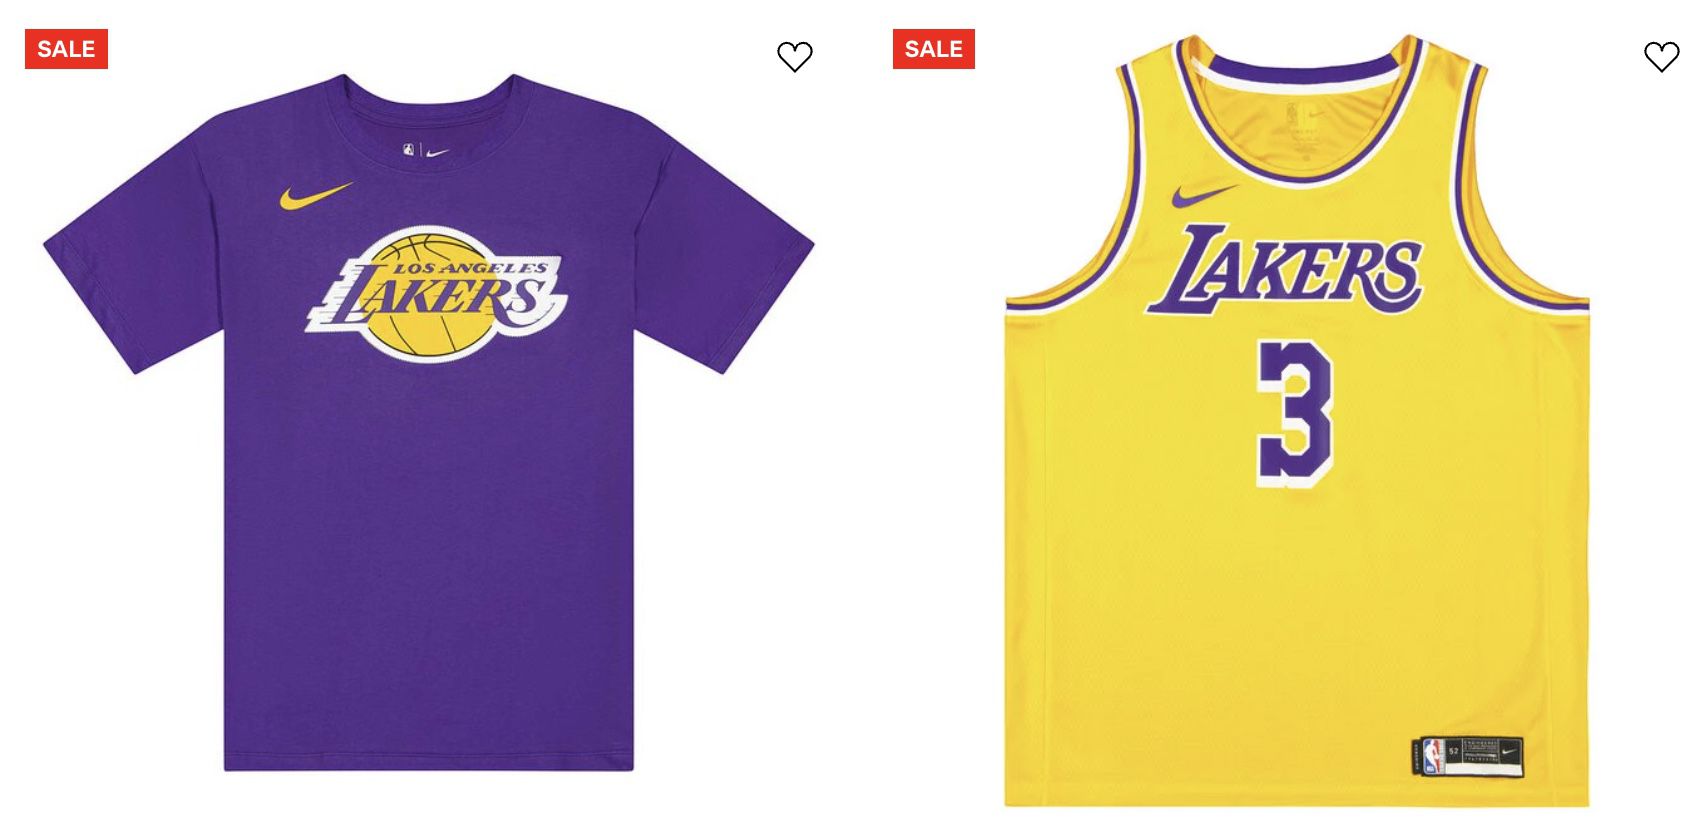 Lakers Sale mit 20% Rabatt bei Kickz   z.B. Nike LeBron T Shirt für 27,96€ (statt 35€)